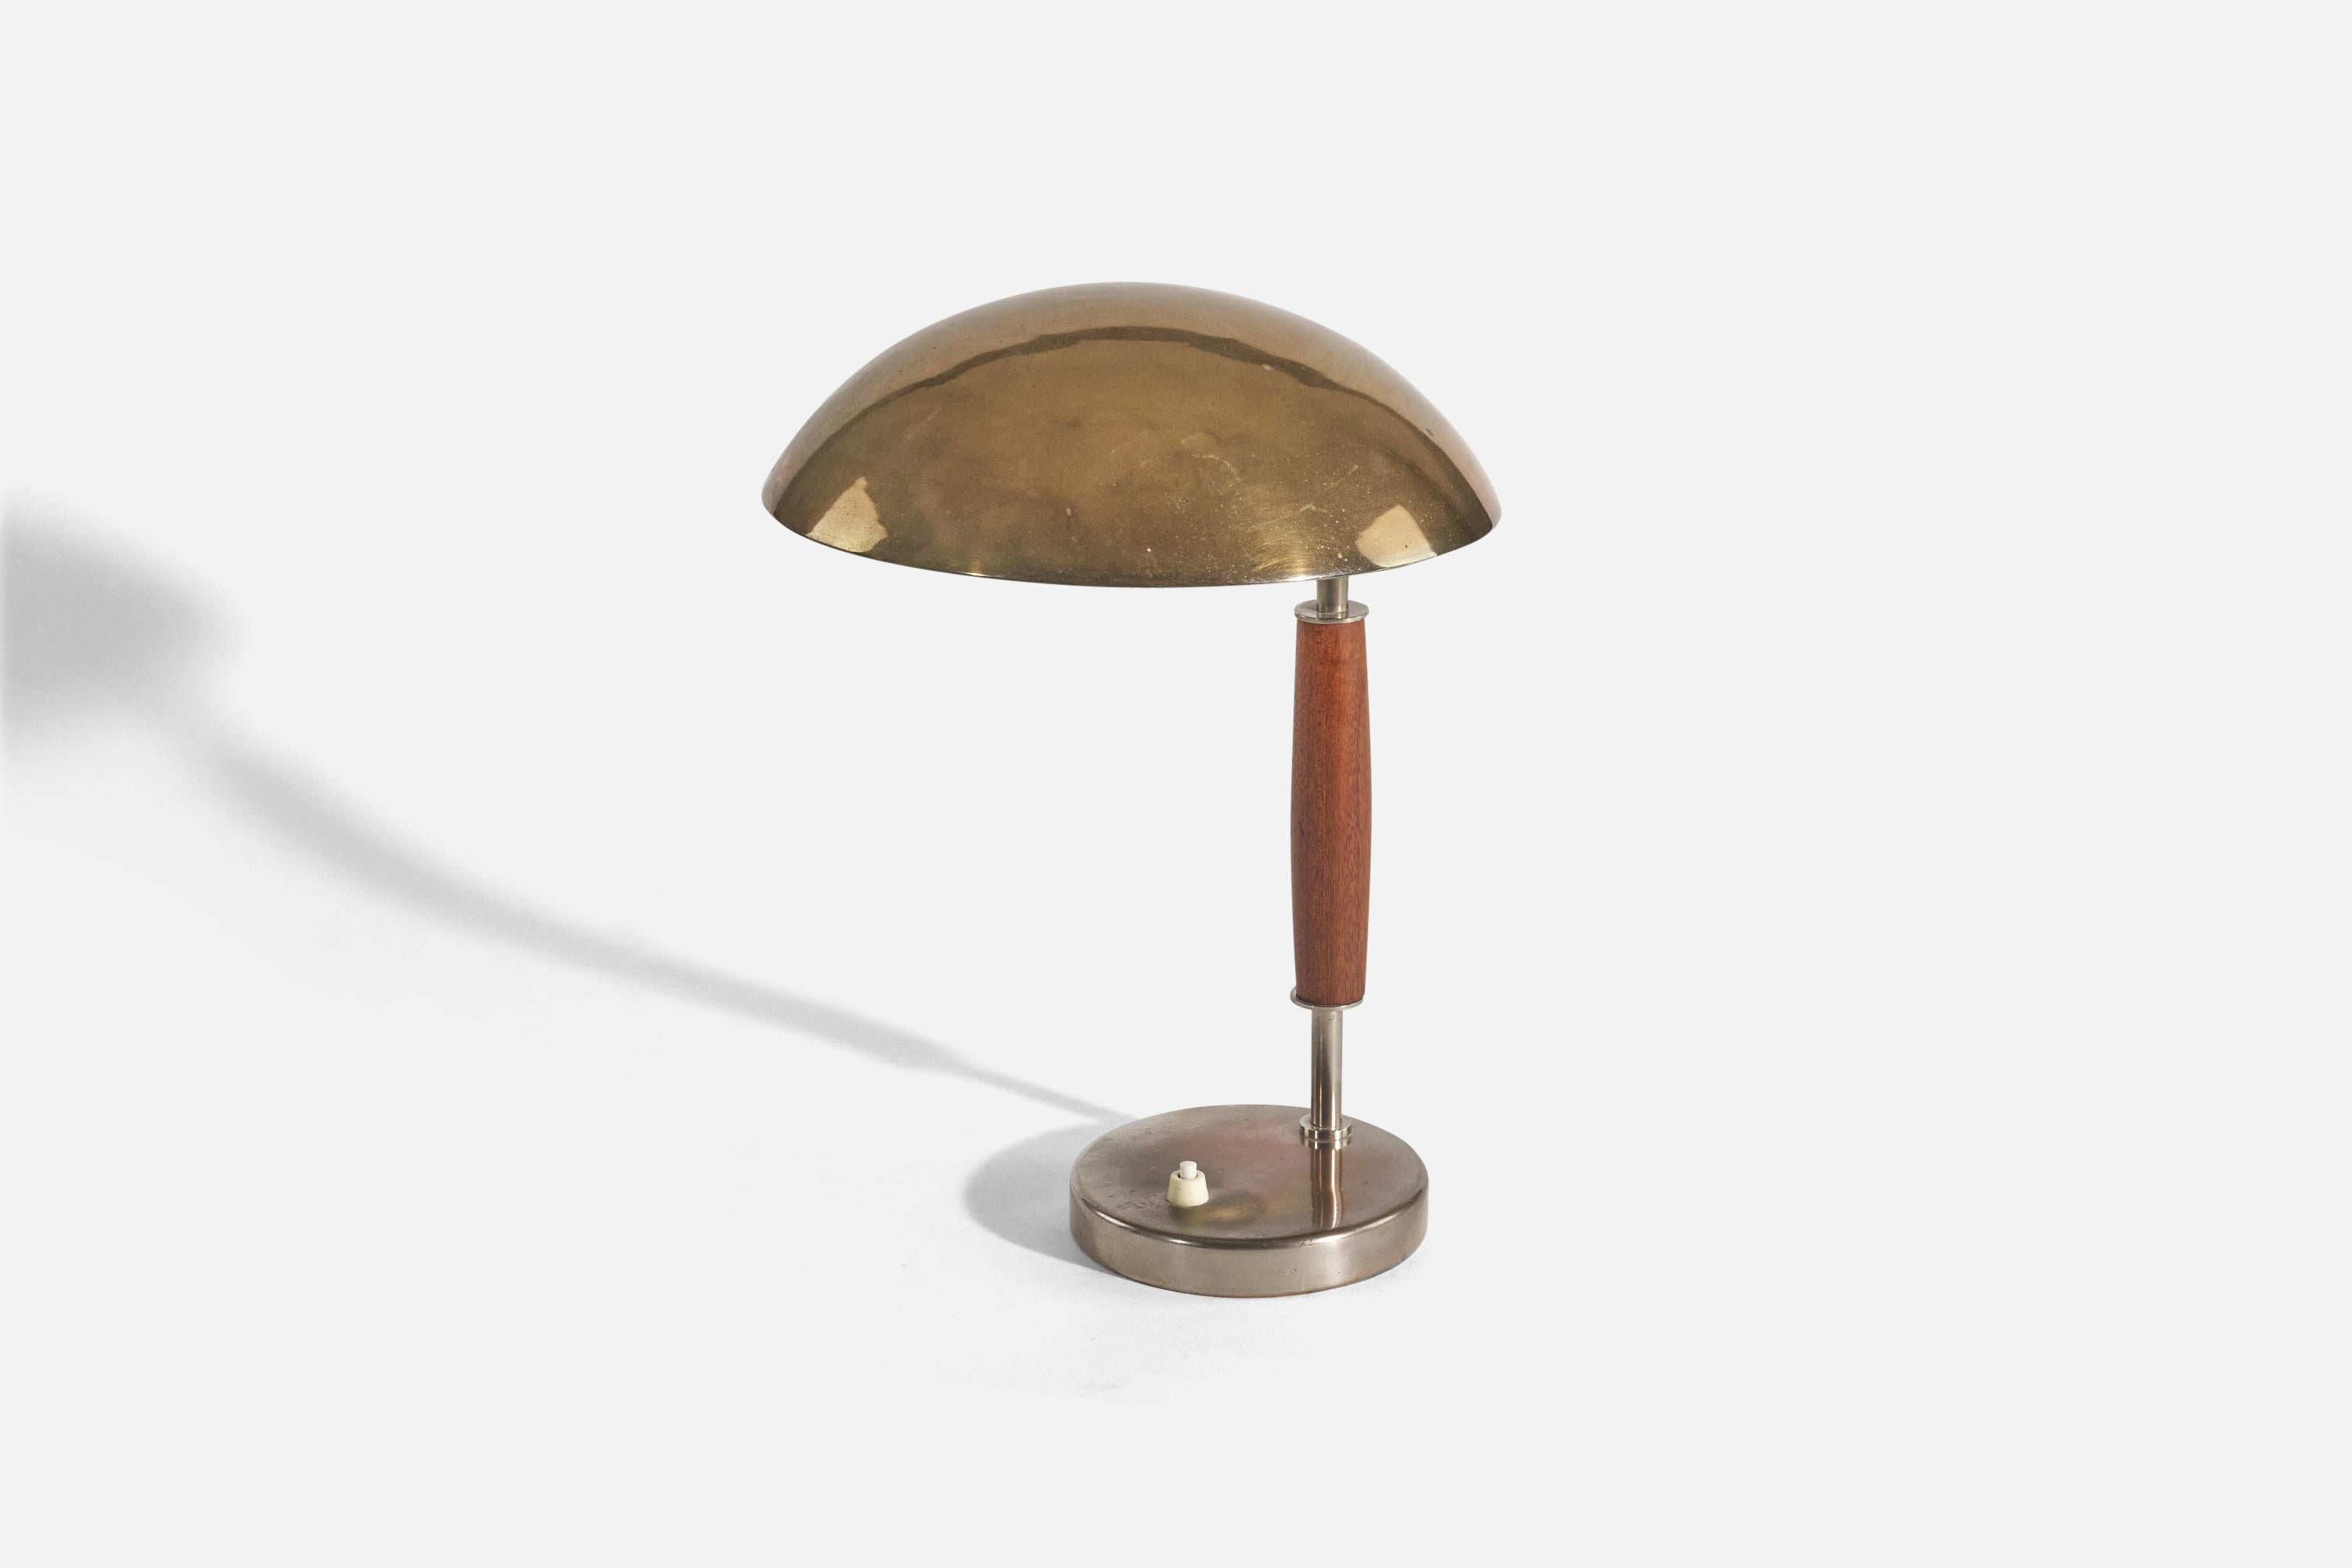 Lampe de table en laiton, métal et bois teinté ; conception et production attribuées à Böhlmarks, Suède, vers 1940. 

La douille accepte les ampoules standard E-26 à culot moyen.
Il n'y a pas de puissance maximale indiquée sur le luminaire.